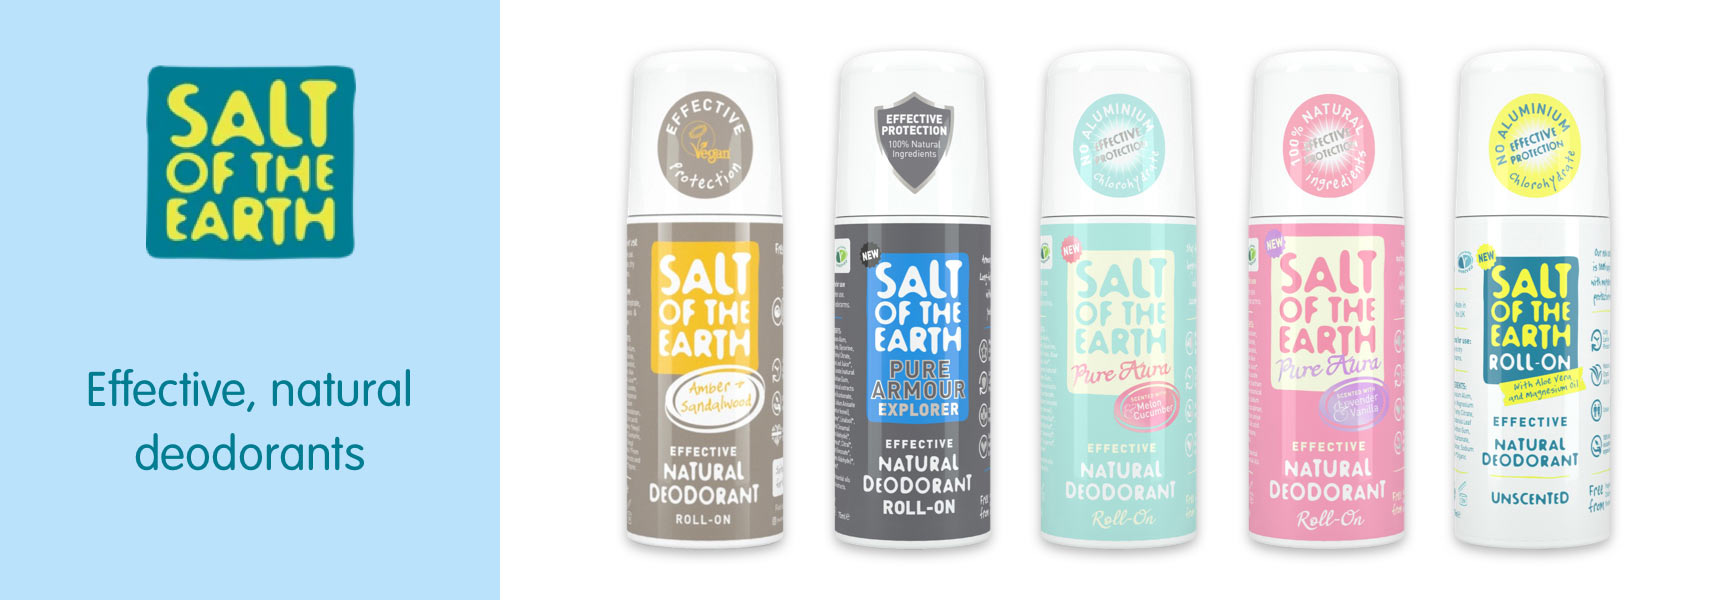 Certificaat Staan voor Trots Salt of the Earth | Natural Deodorant | Big Green Smile